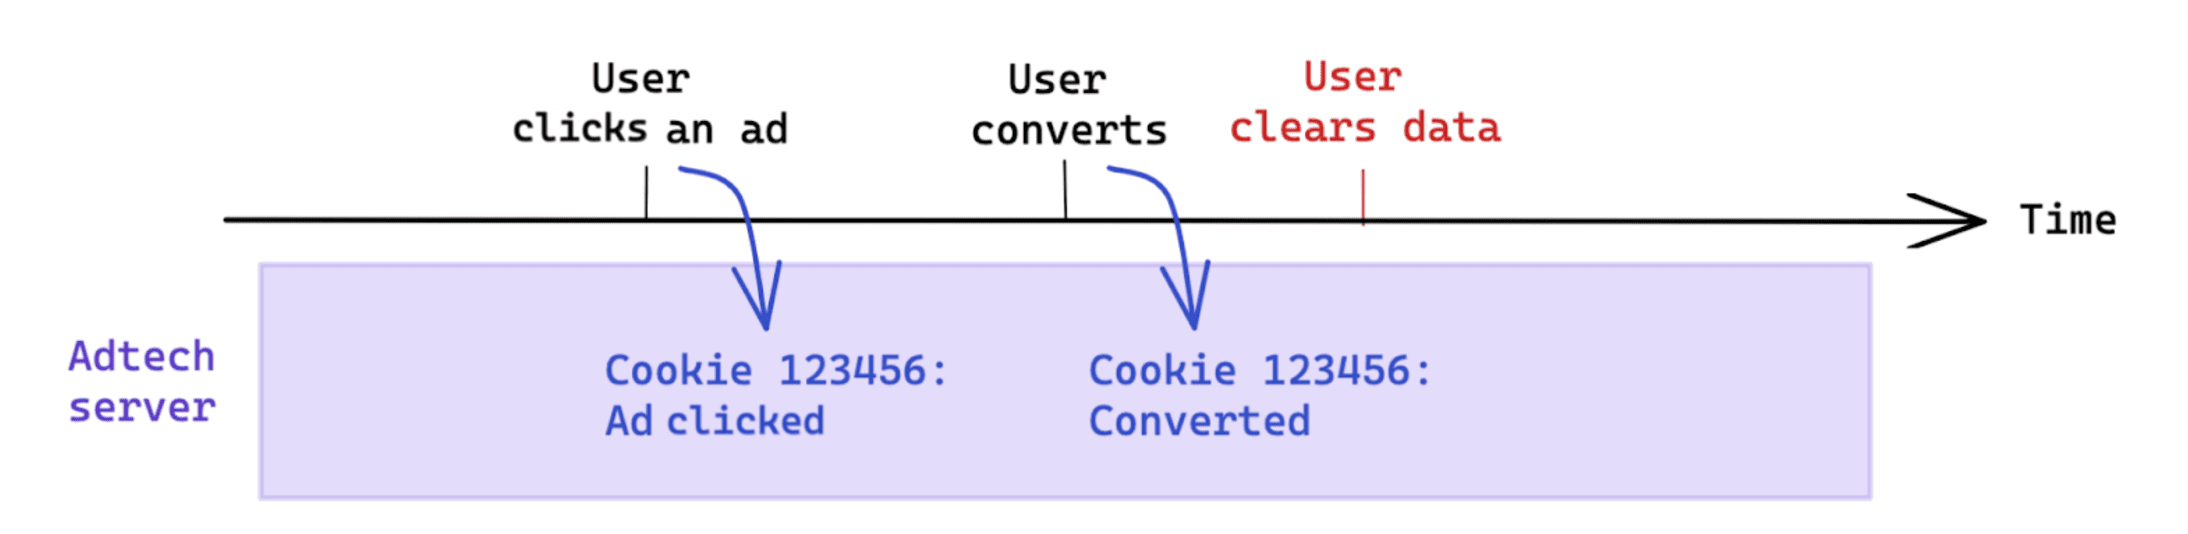 Das Löschen von Daten nach einer Conversion, das vom Nutzer initiiert wurde, wirkt sich nicht auf die cookiebasierte Messung aus.